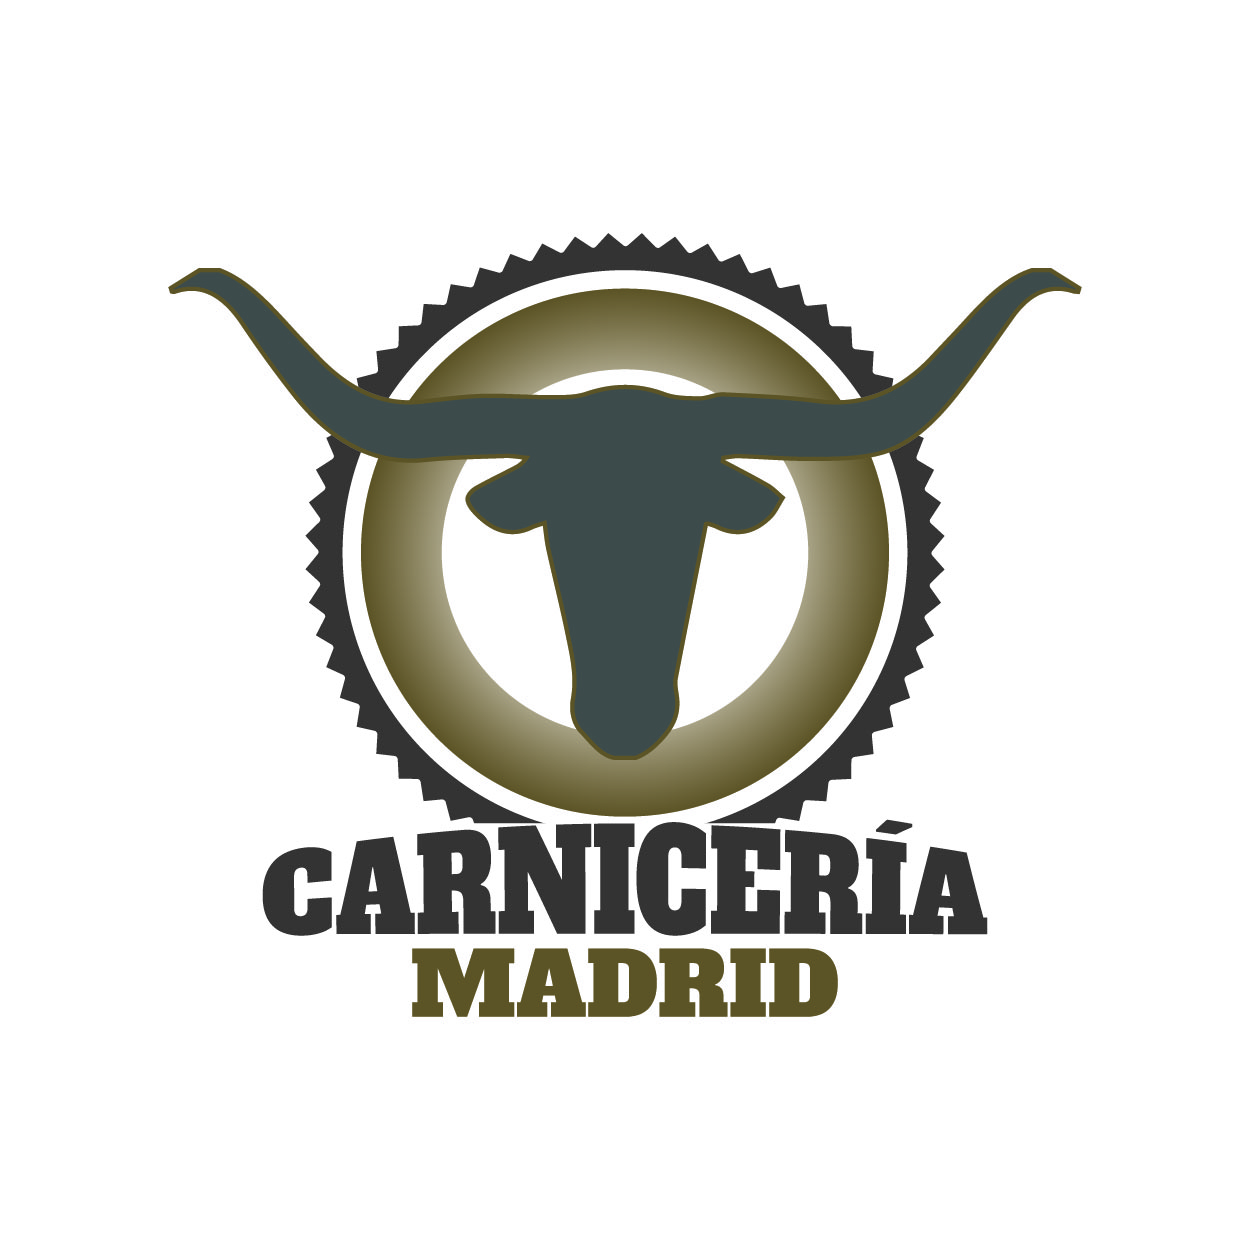 (c) Carniceria.madrid